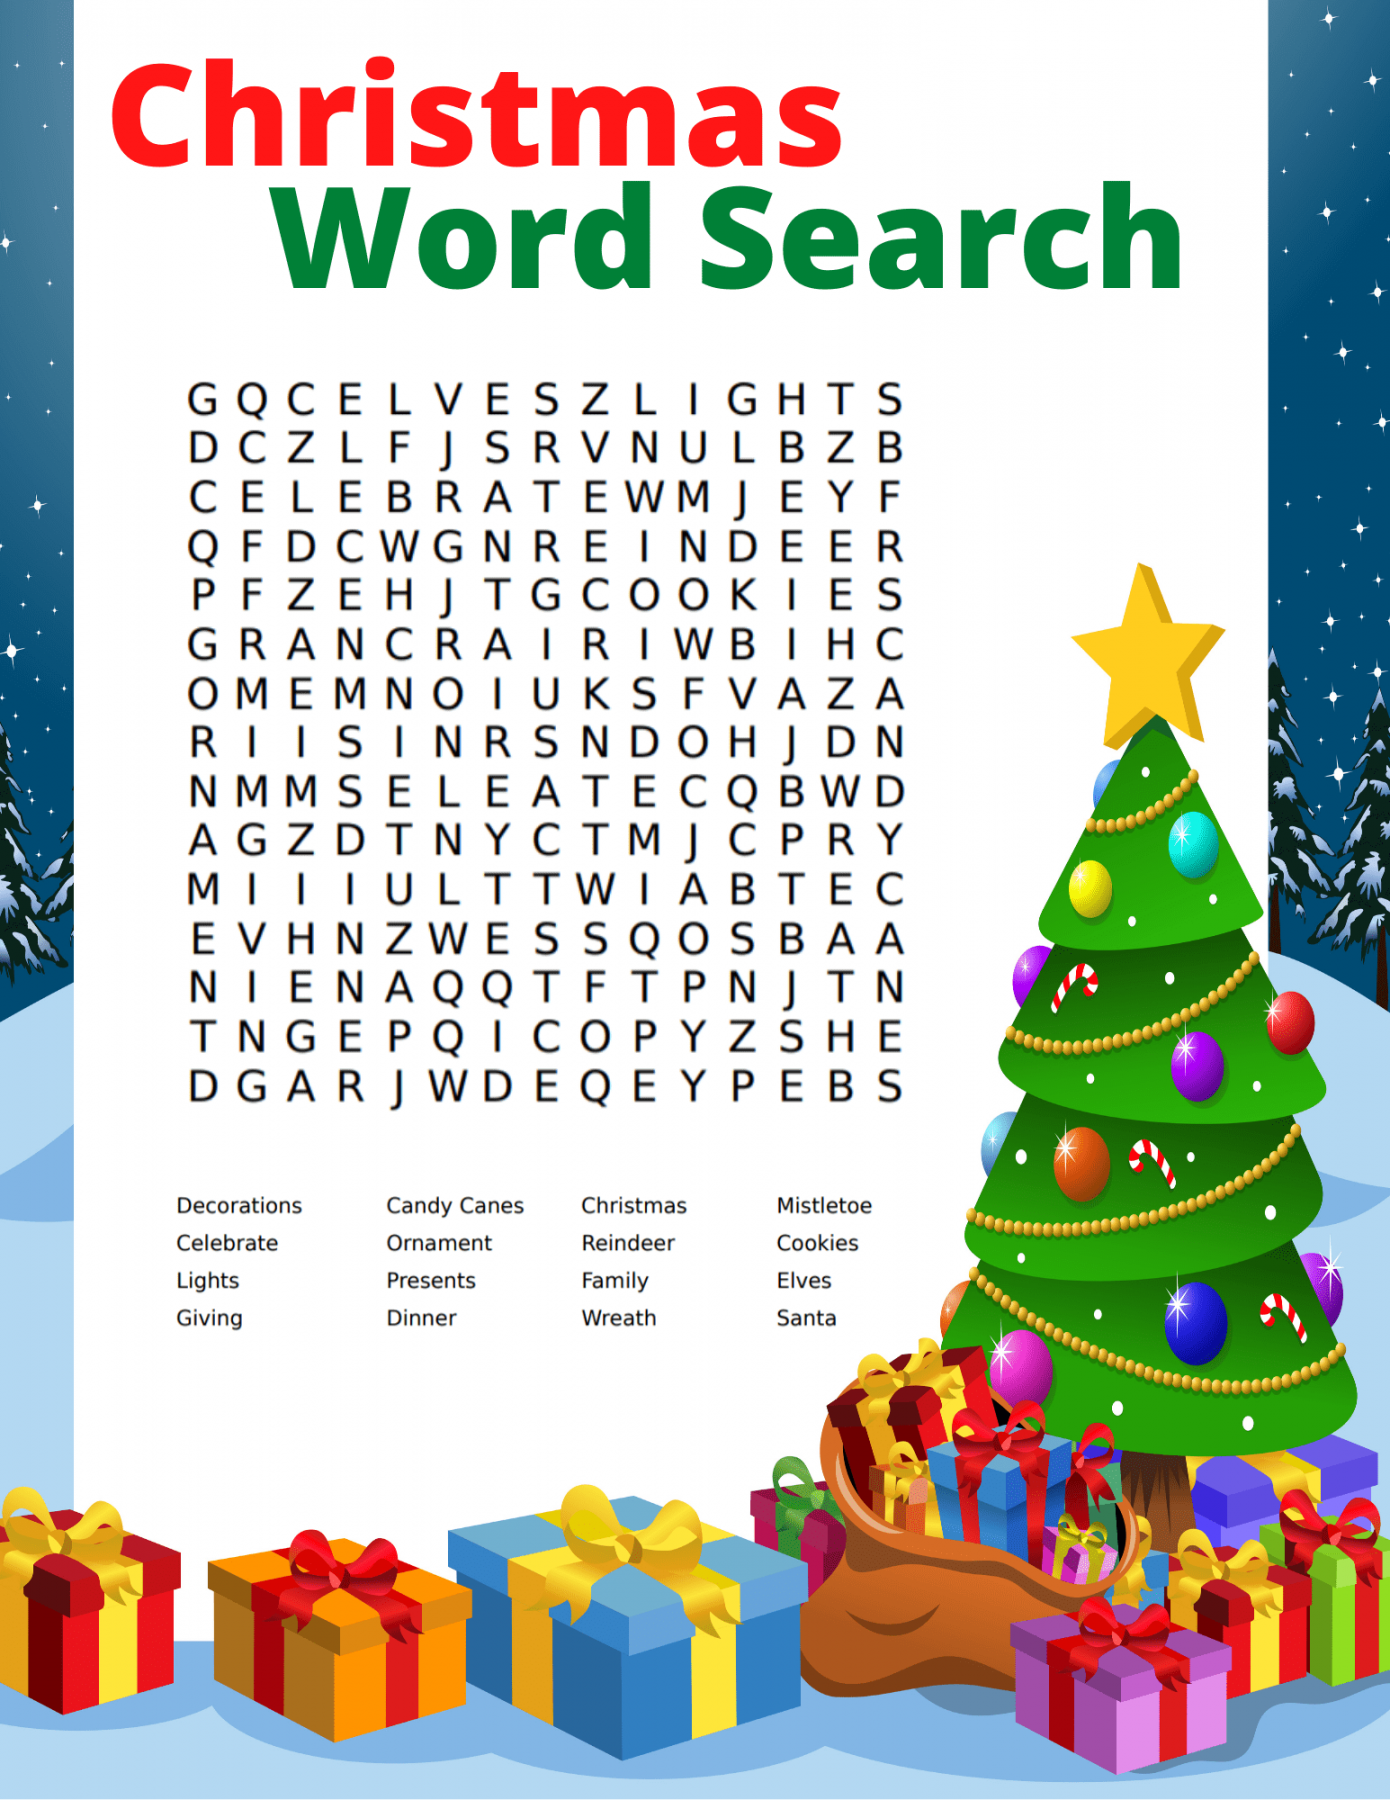 Free Christmas Word Search Printable - Printable - Free Christmas Word Search Printable for Kids and Adults